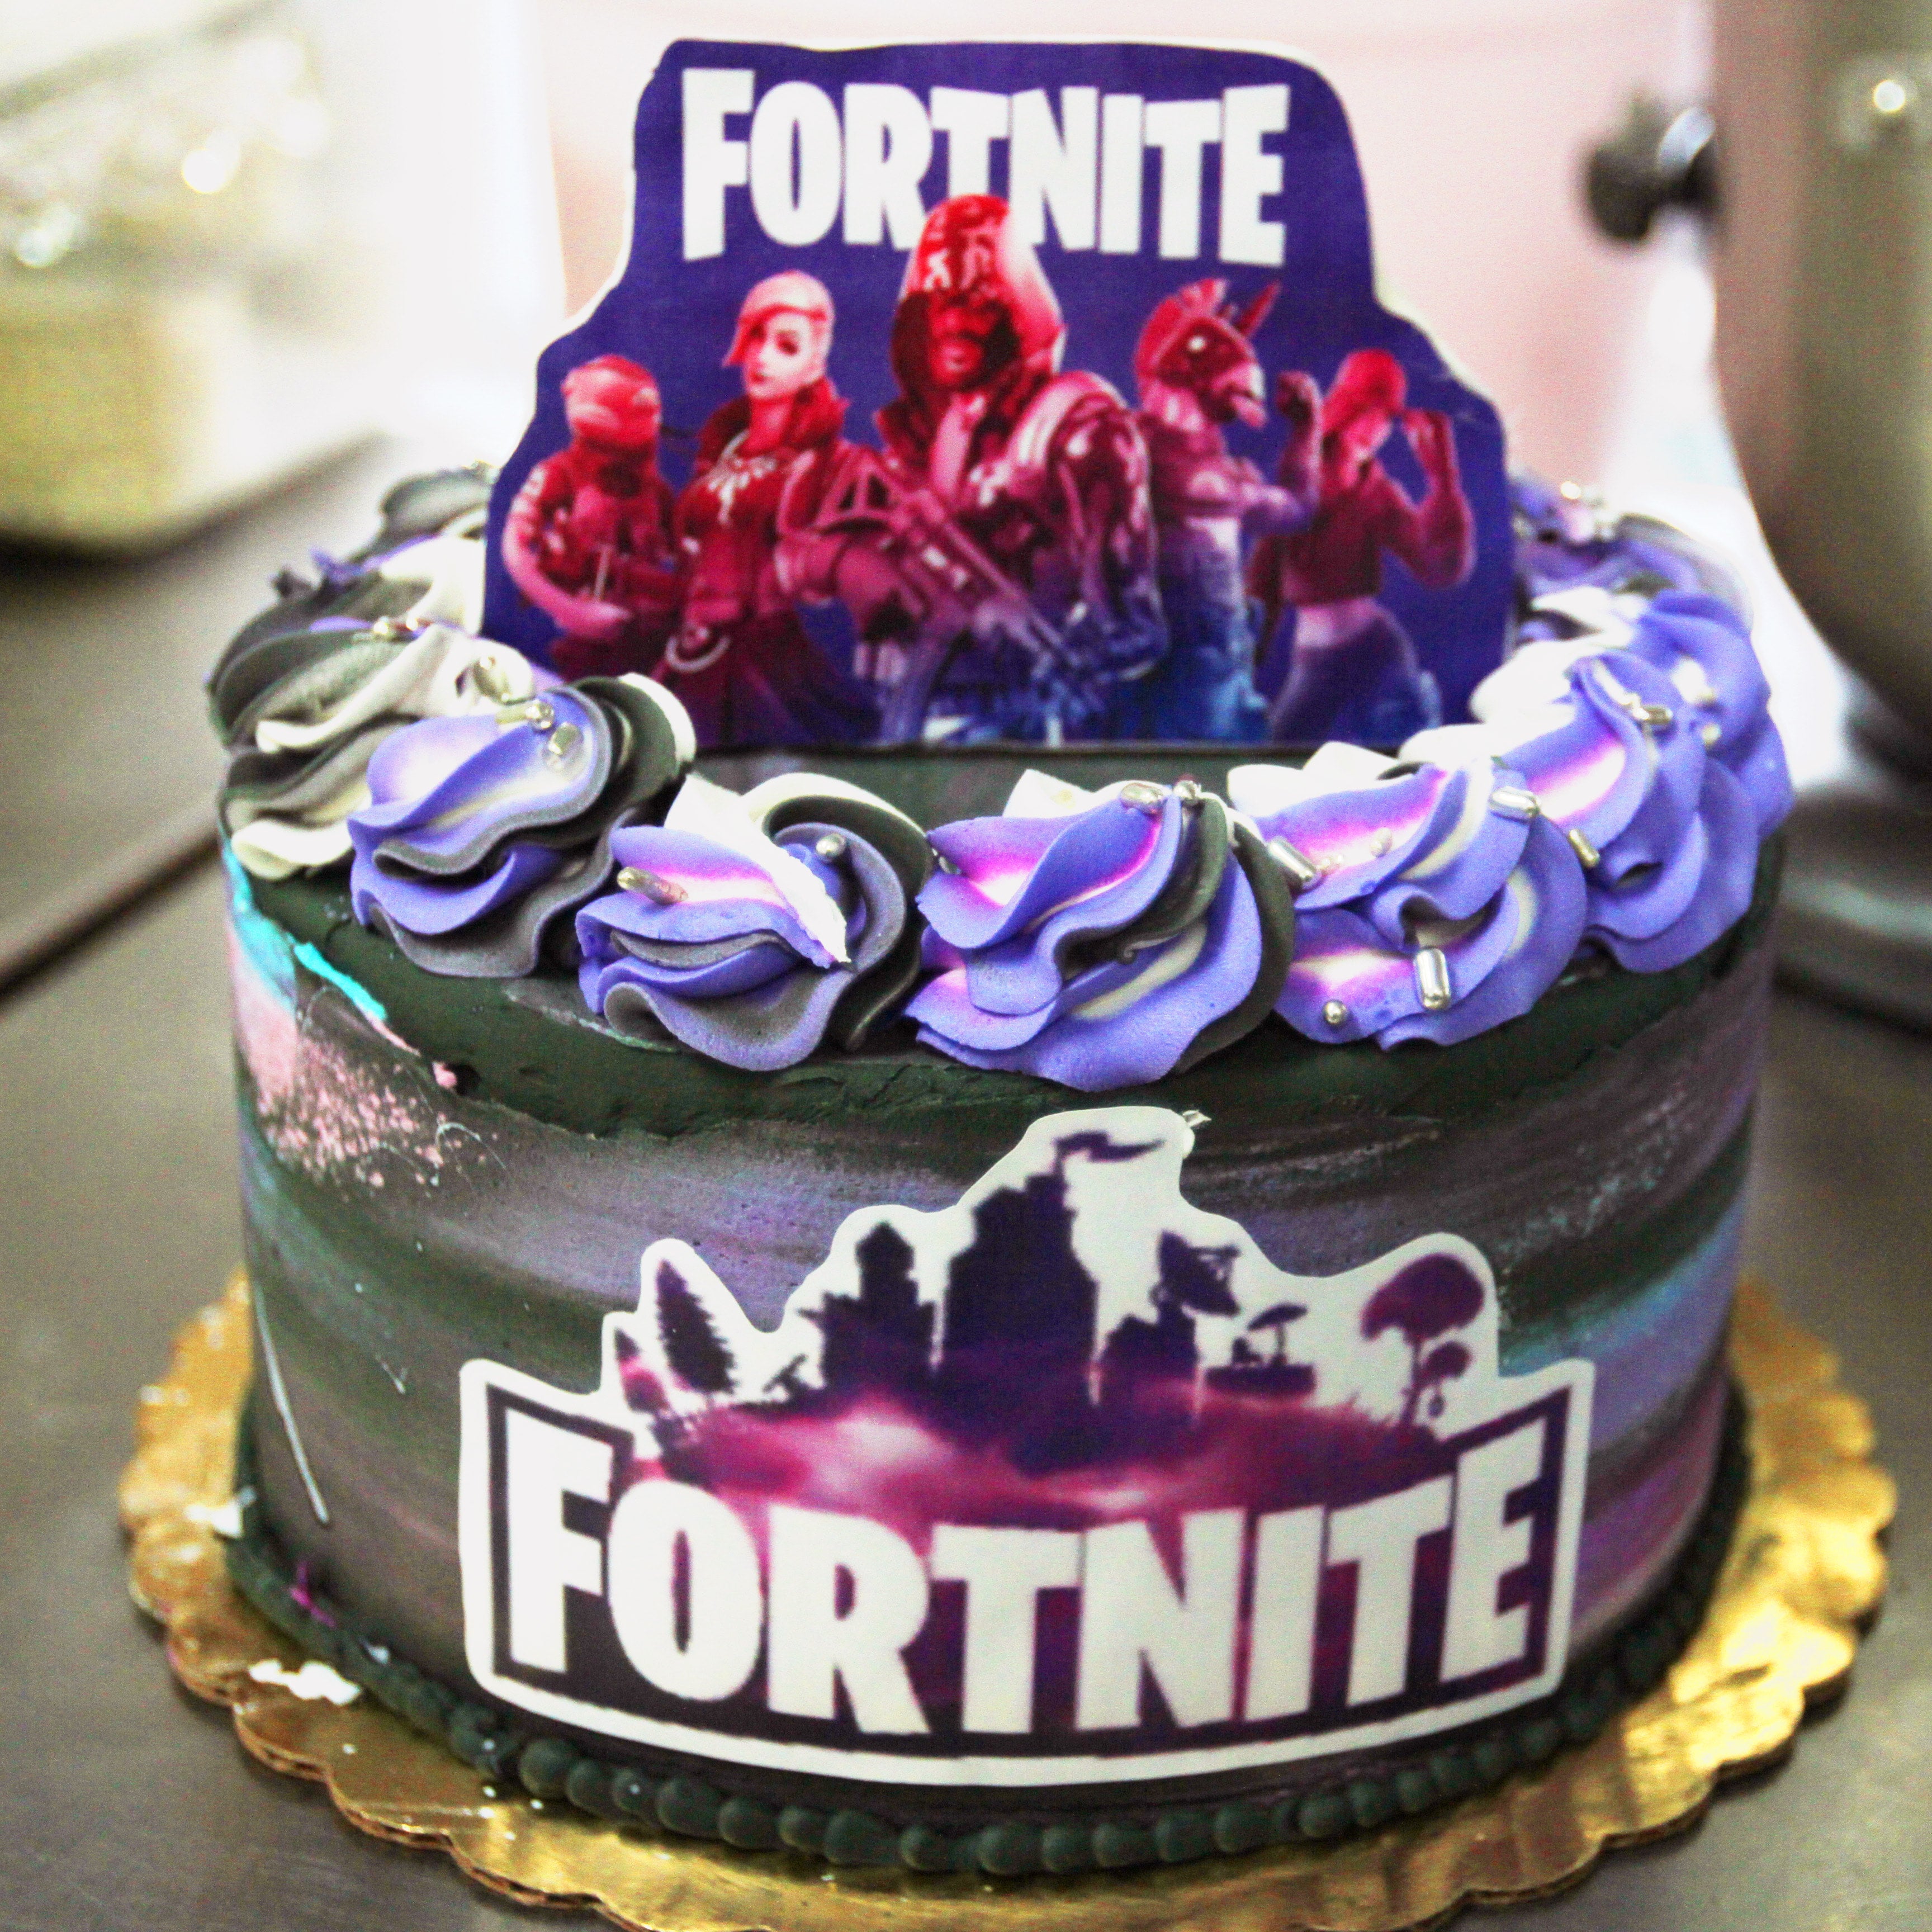 Best Fortnite Cakes - 13 Fortnite Bday Bash Cake Ideas